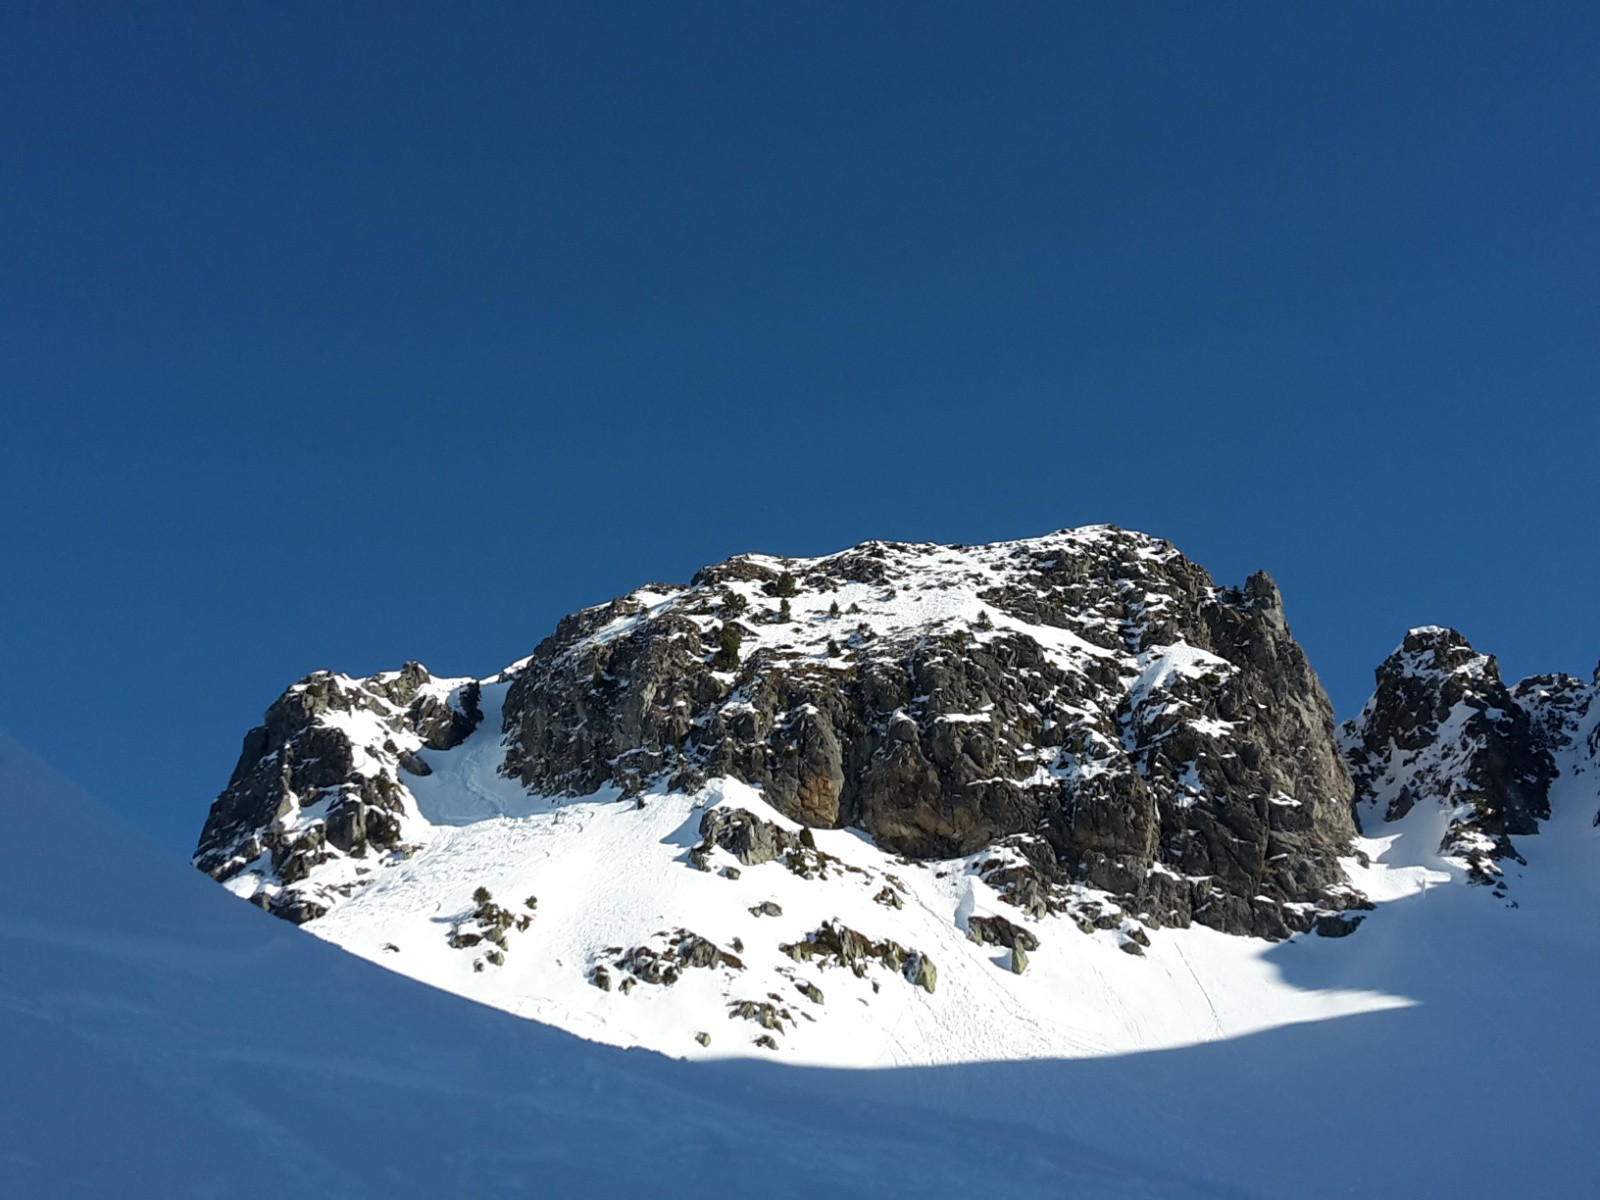 Vue globale et précise du sommet, avec son accès par la cheminée finale.